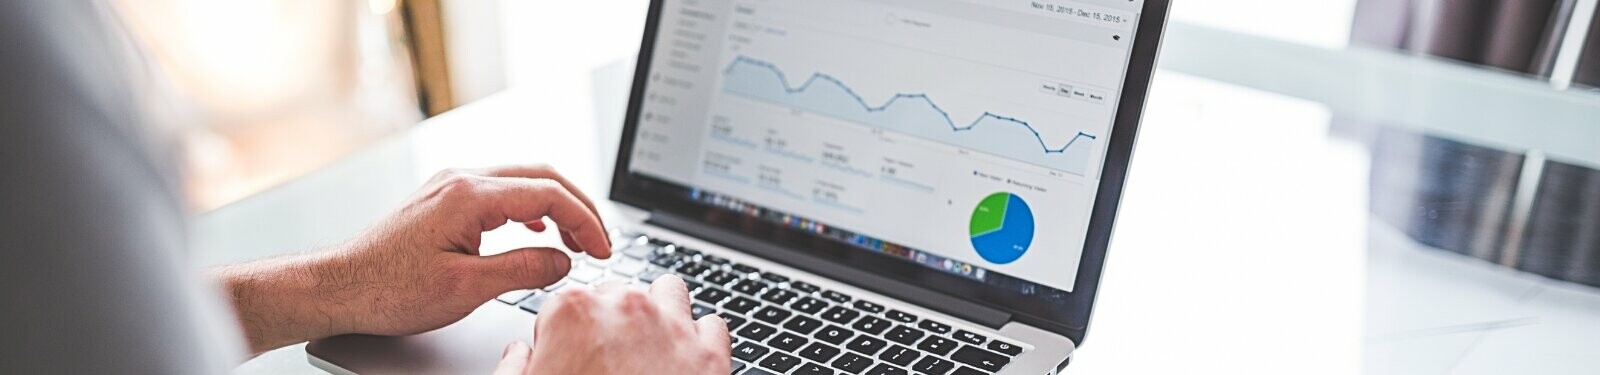 Eine Person, die an einem Laptop arbeitet, auf dessen Bildschirm grafische Darstellungen von Statistiken und ein Kuchendiagramm zu sehen sind, was auf die Durchführung von Online-Marketing-Aktivitäten hindeutet